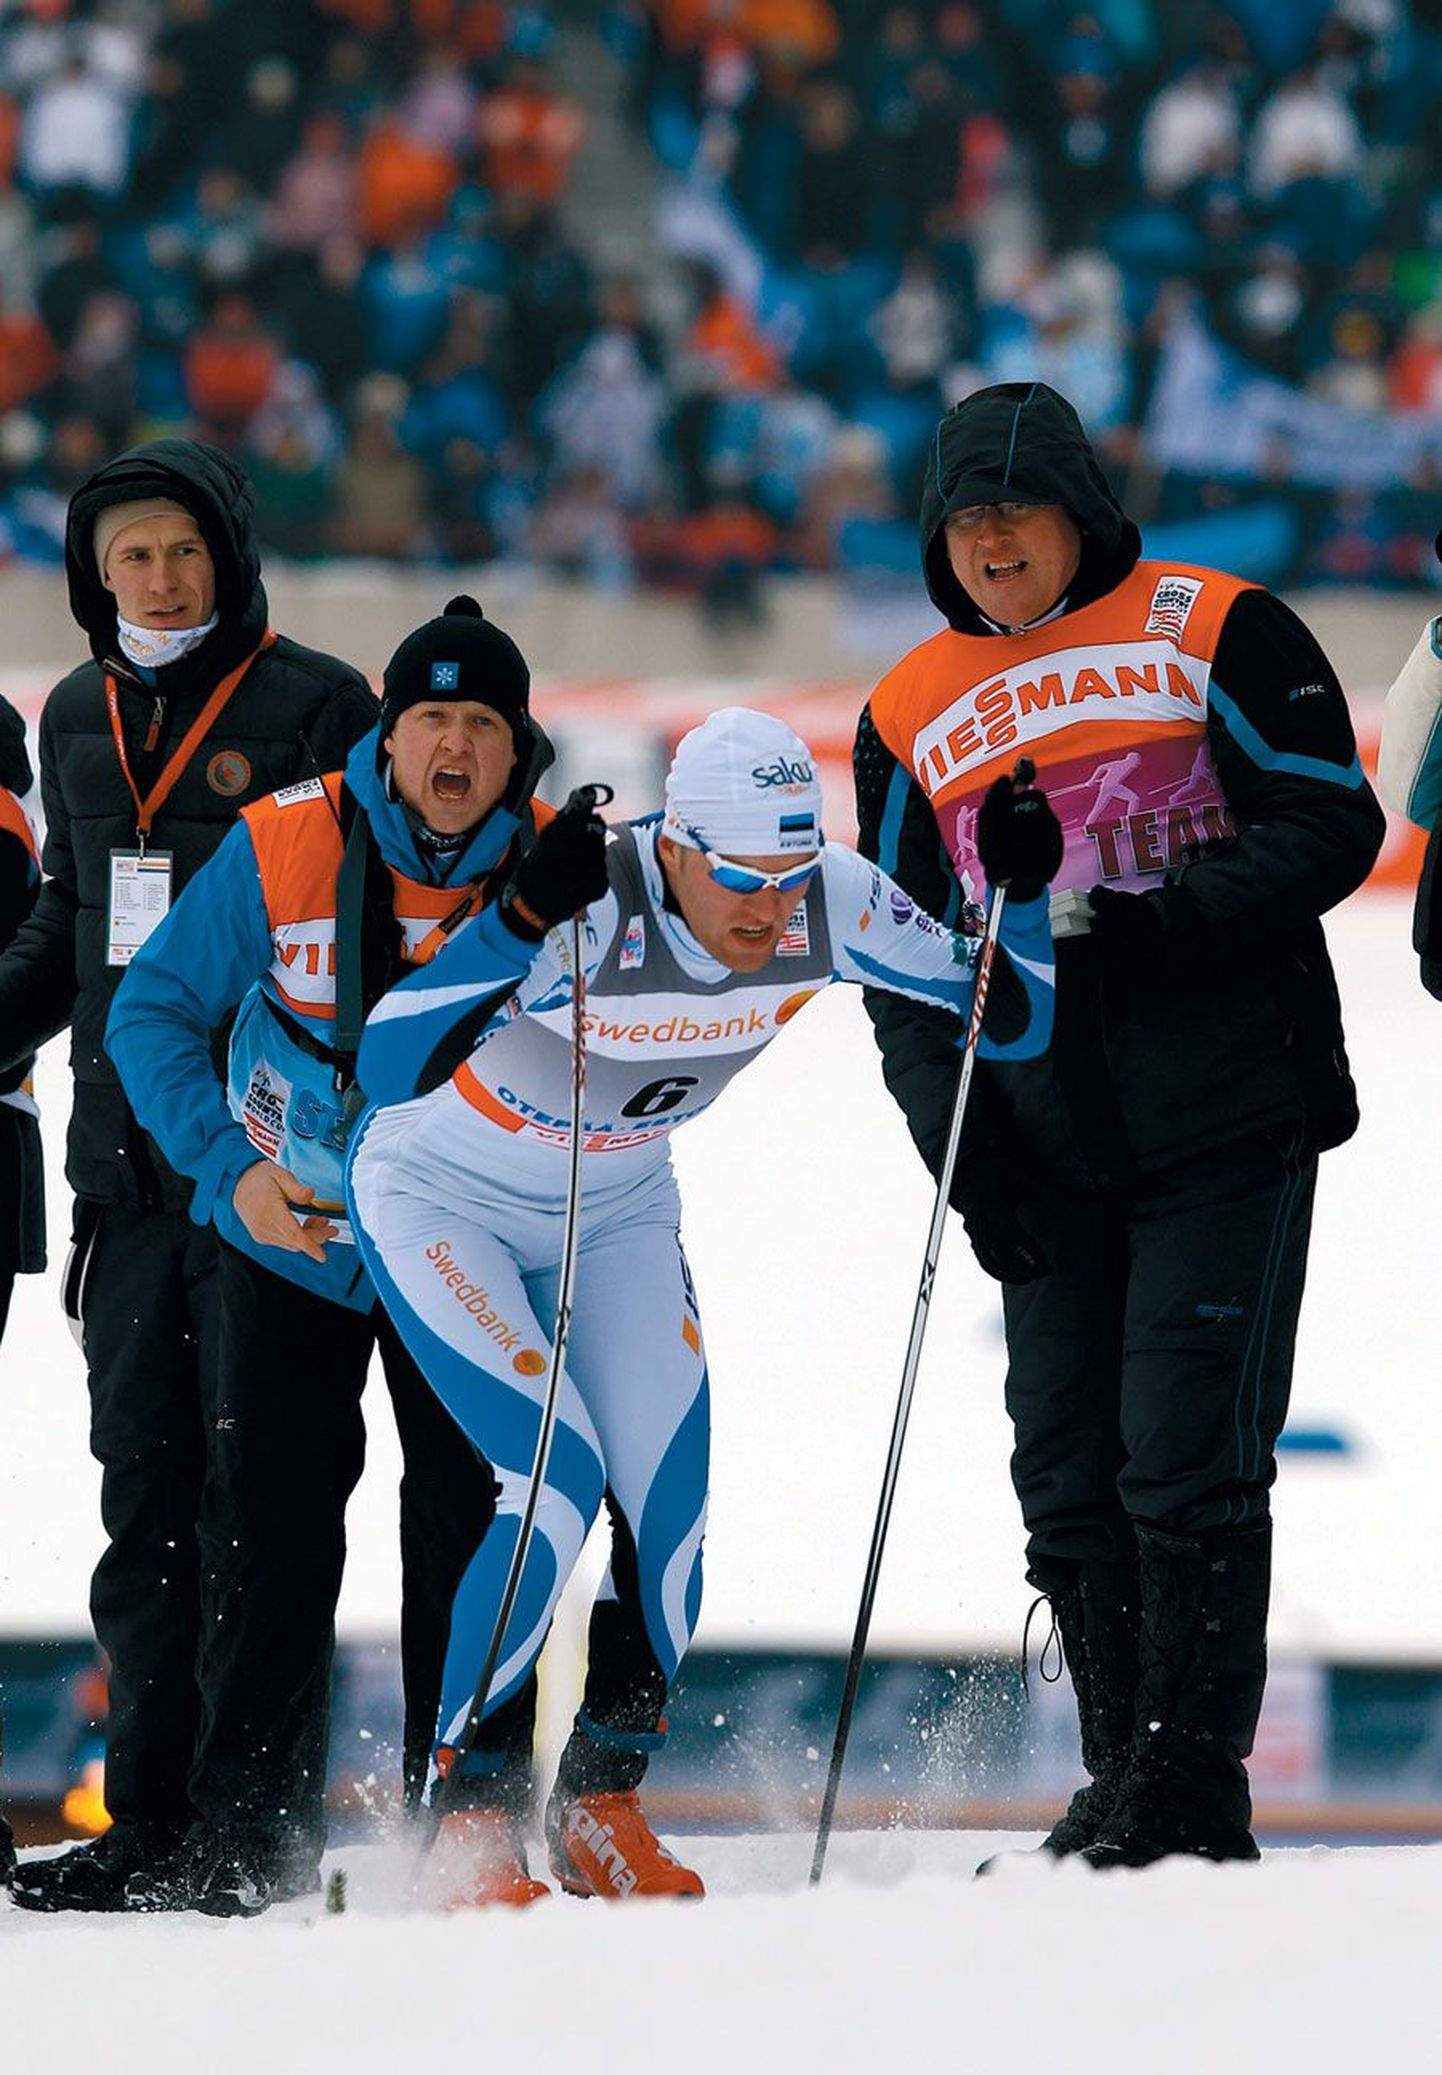 Eesti suusasprindi koondislane Peeter Kümmel sõitis eelmisel aastal Käärikul sada meetrit 13,7 sekundiga ning pidi leppima kohaga poolfinaalis. Pildil sõidab Kümmel selle aasta jaanuaris Otepääl peetud MK-etapi sprindi eelsõidus.